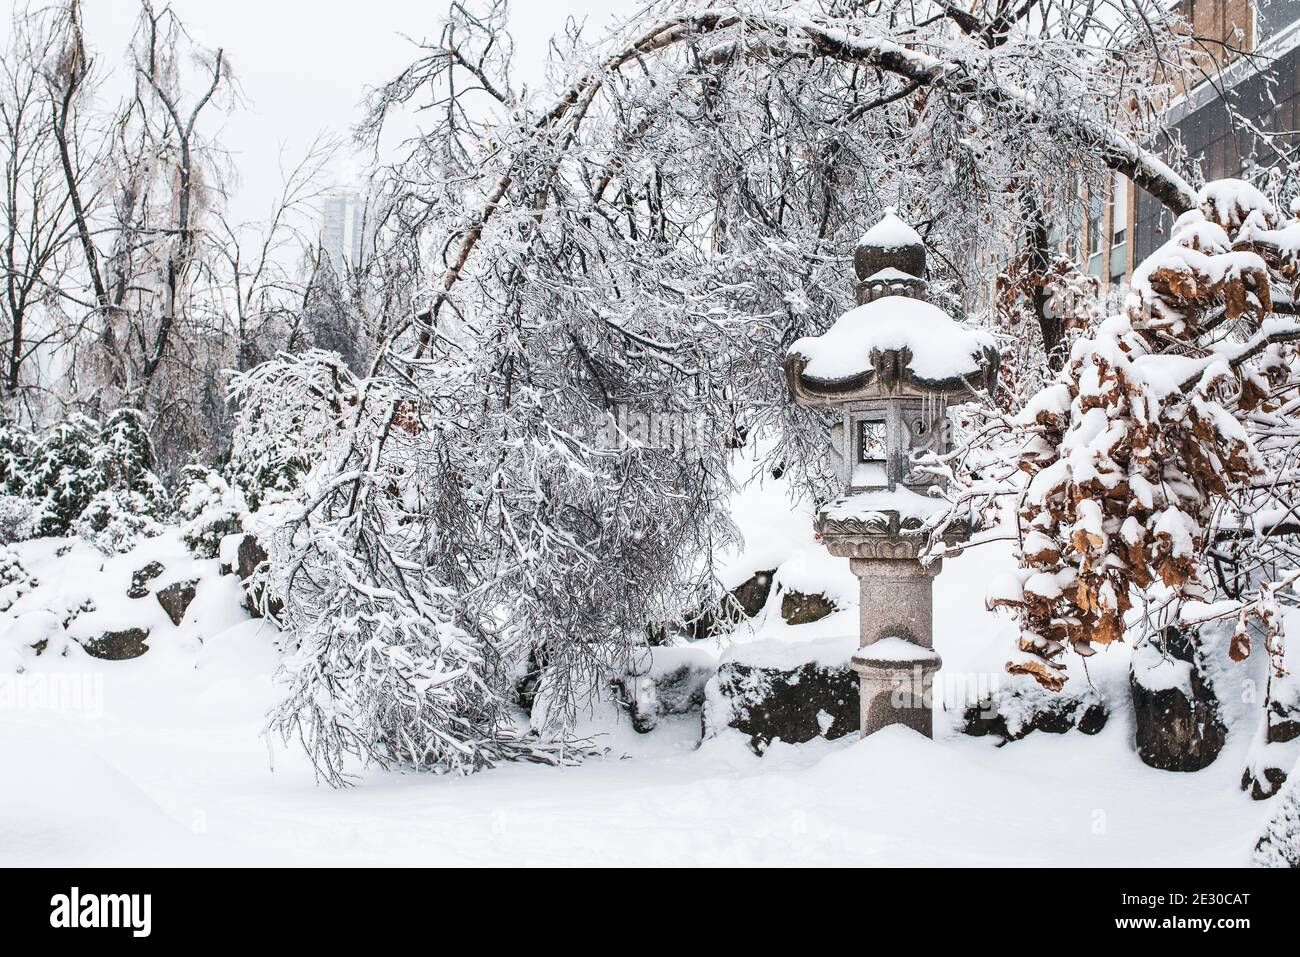 Japanischer Steingarten im Winter. Eisiger Baum, der sich unter dem Gewicht von Schnee und Eis zu Boden beugte. Kaltes, frostiges Schneewetter. Winterlandschaft. Stockfoto